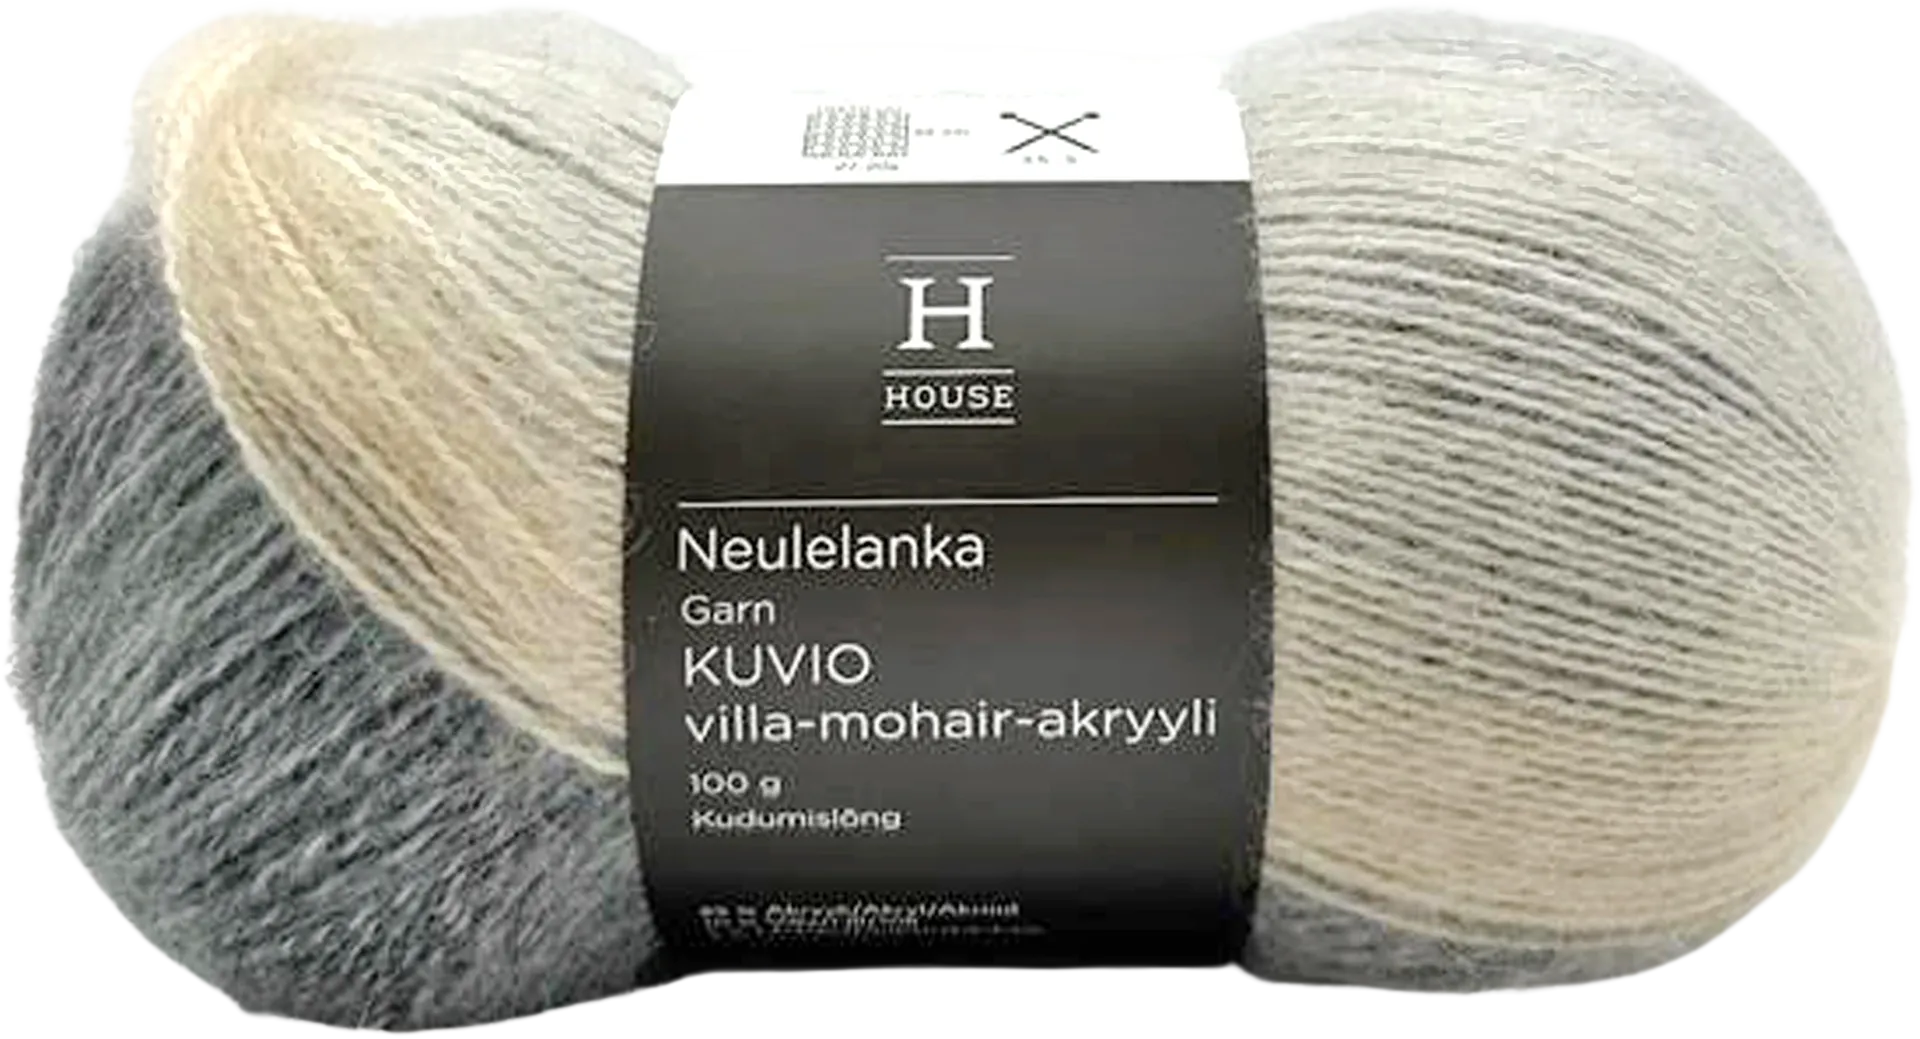 House neulelanka Kuviot villa-mohair-akryyli 100 g Light grey/dark grey 28092